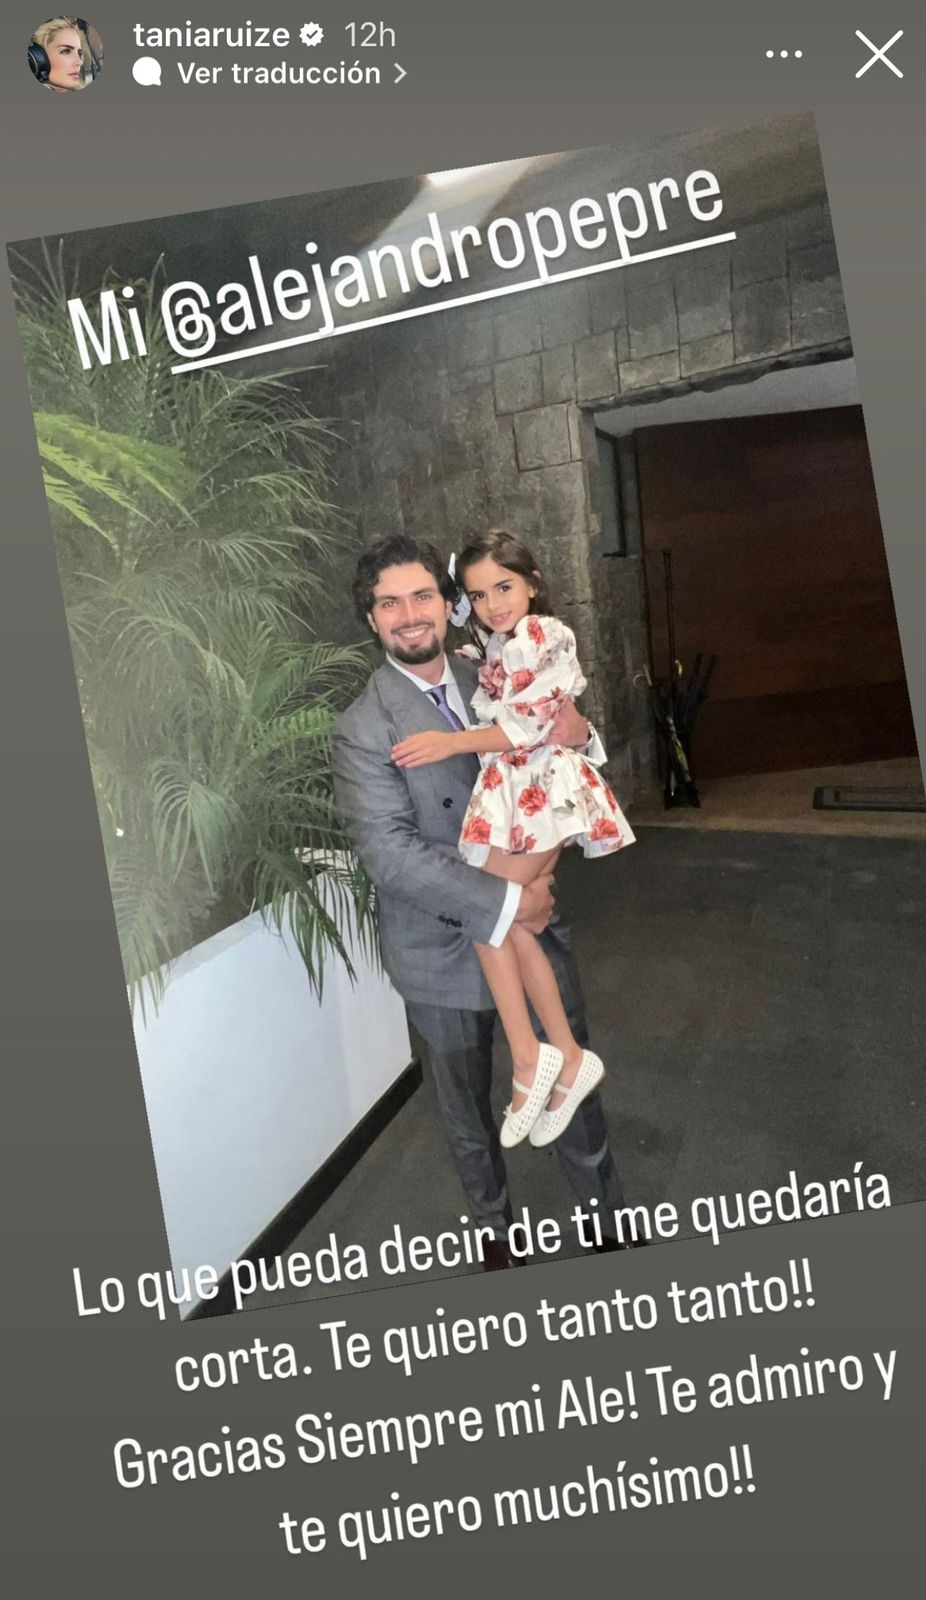 Alejandro respondió a las palabras de Tania Ruiz 
(Foto: Instagram/@taniaruize)